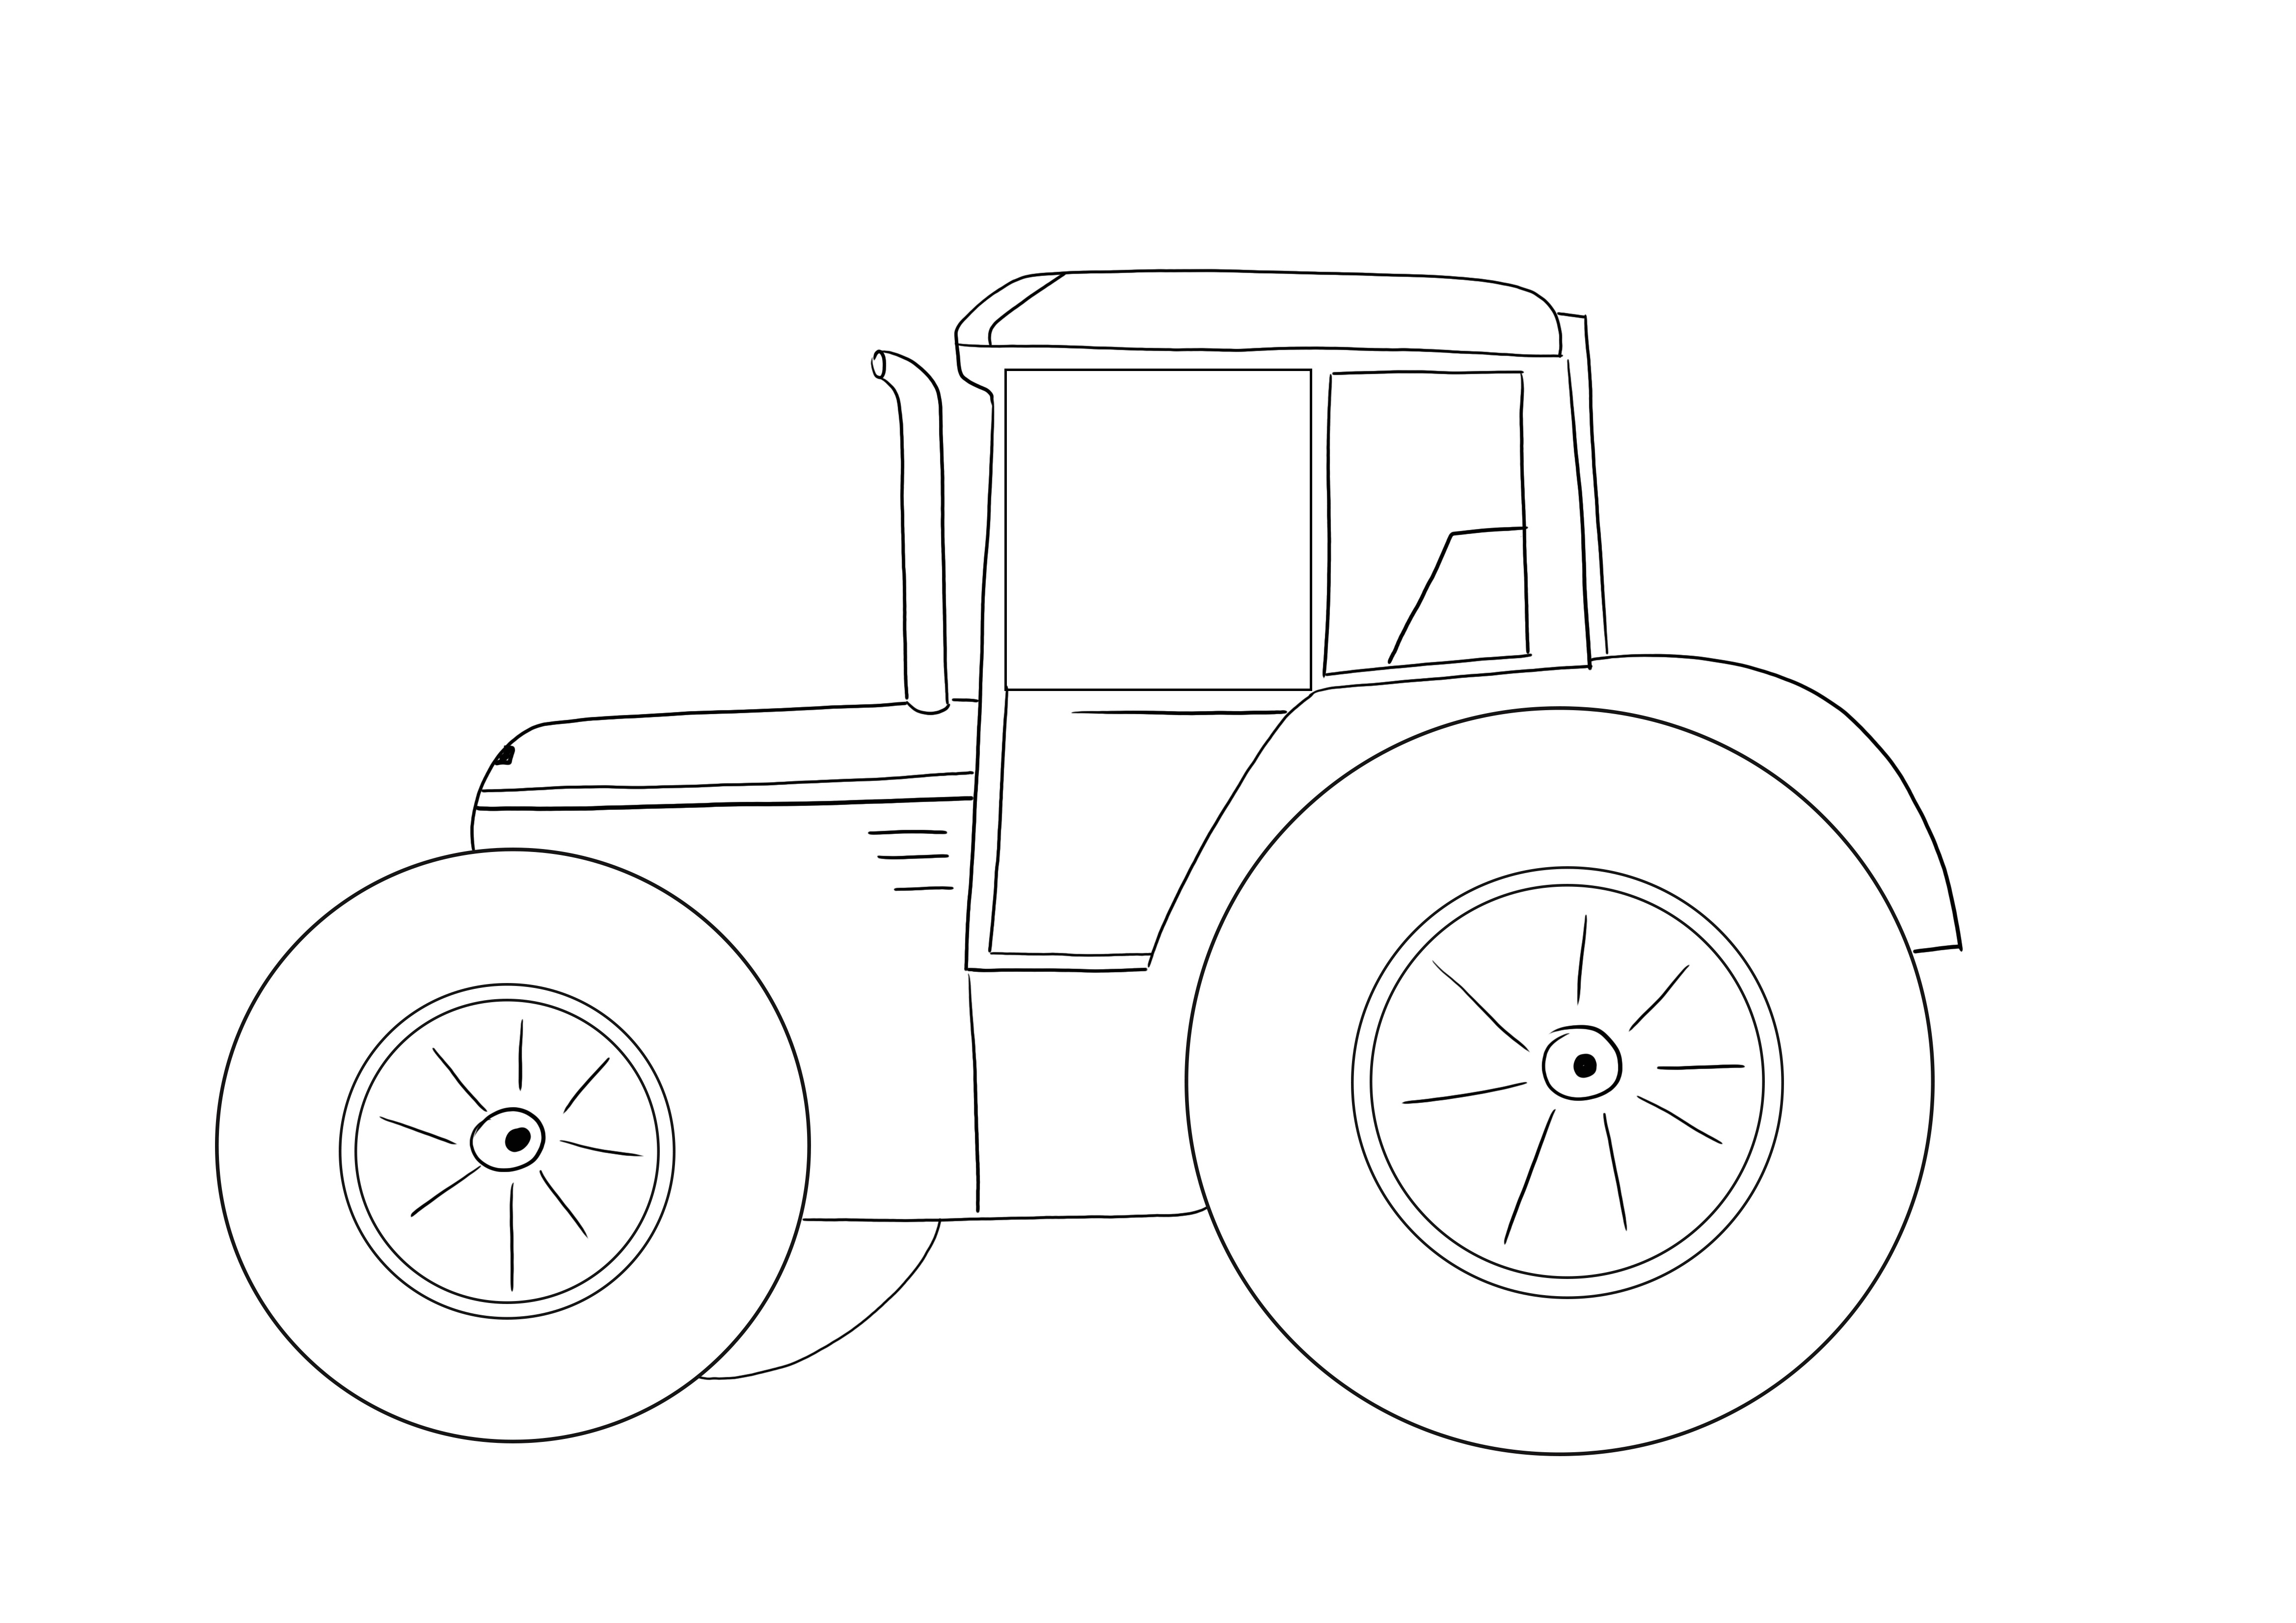 Çiftlik Traktörünün basit çizgileri ücretsiz indirmek için boyama sayfası